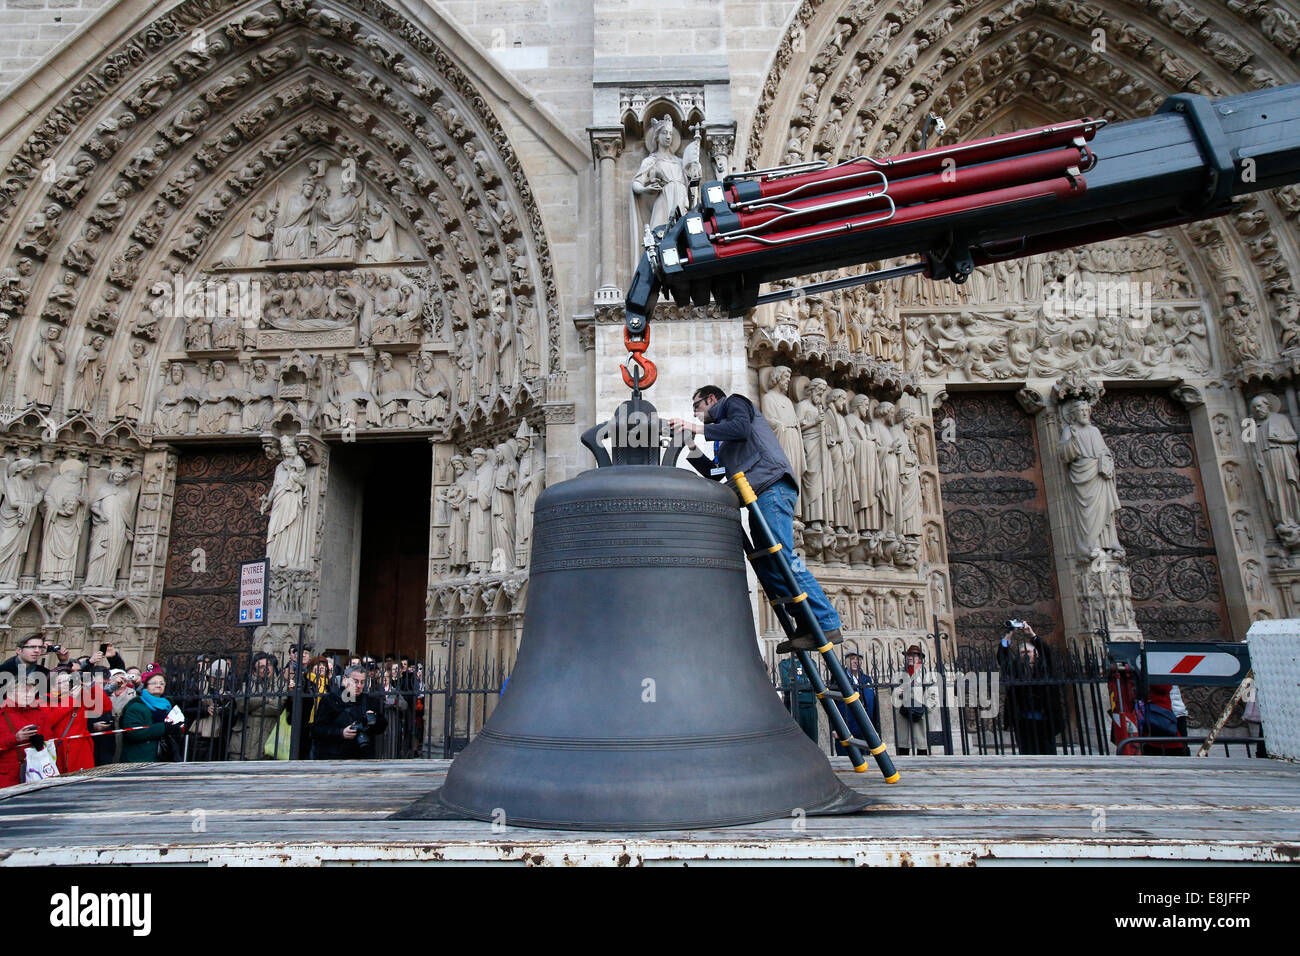 Notre-Dame de Paris 850th Jubiläum.   Ankunft der neuen Glocke läuten.  Getaufte "Marie", die größte Glocke wiegt 6 Tonnen und pla Stockfoto